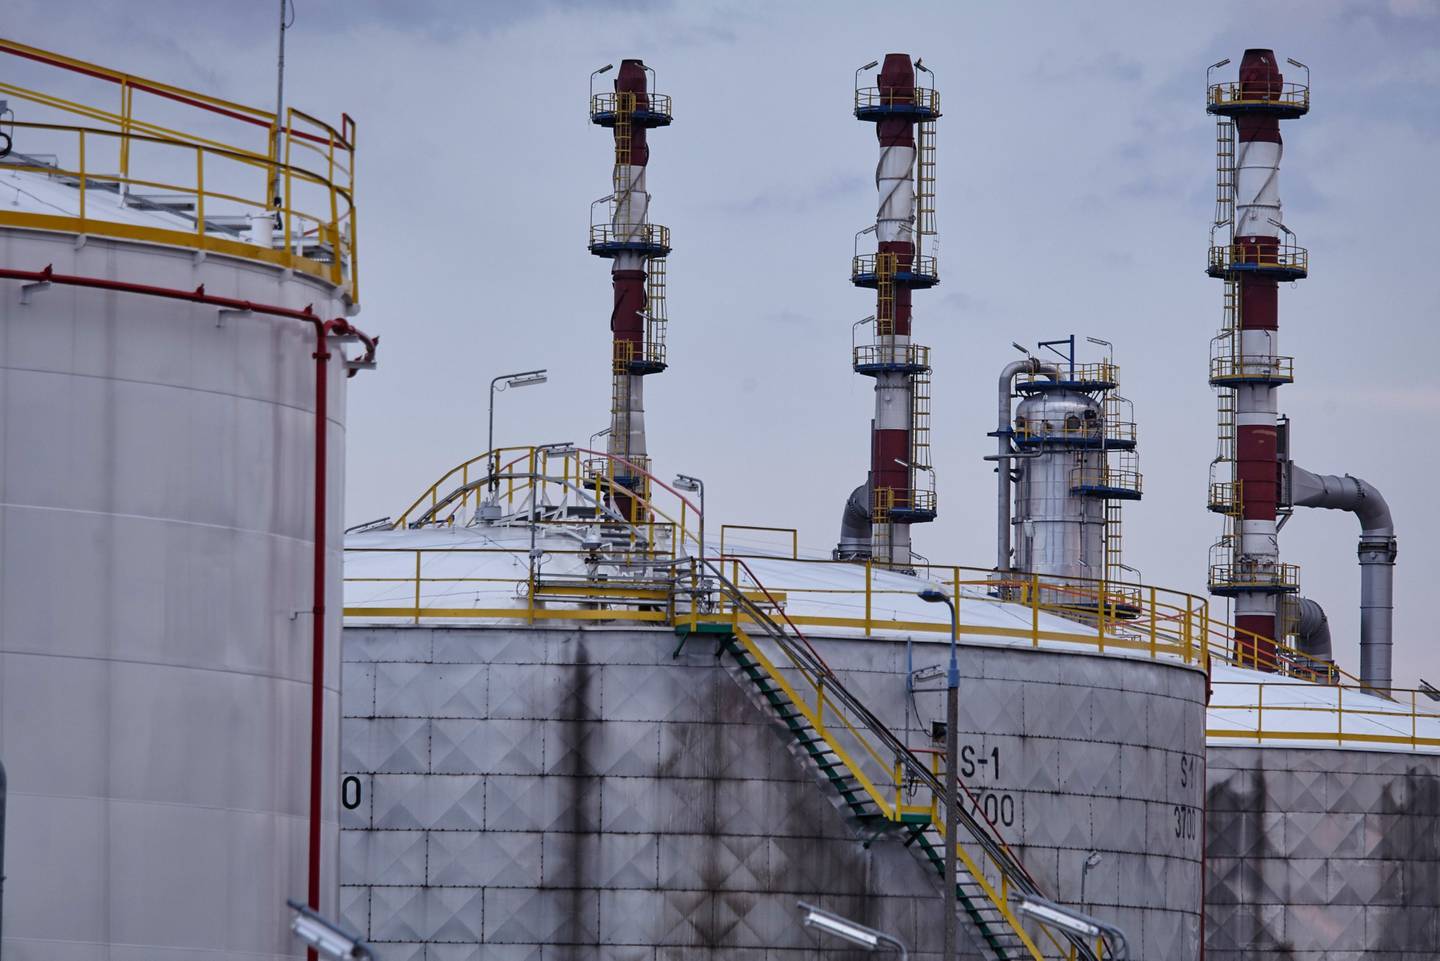 Torres de refinación cerca de los silos de almacenamiento de petróleo en la refinería de petróleo Grupa Lotos SA en Gdansk, Polonia, el martes 28 de julio de 2020. Fotógrafo: Bartek Sadowski/Bloomberg